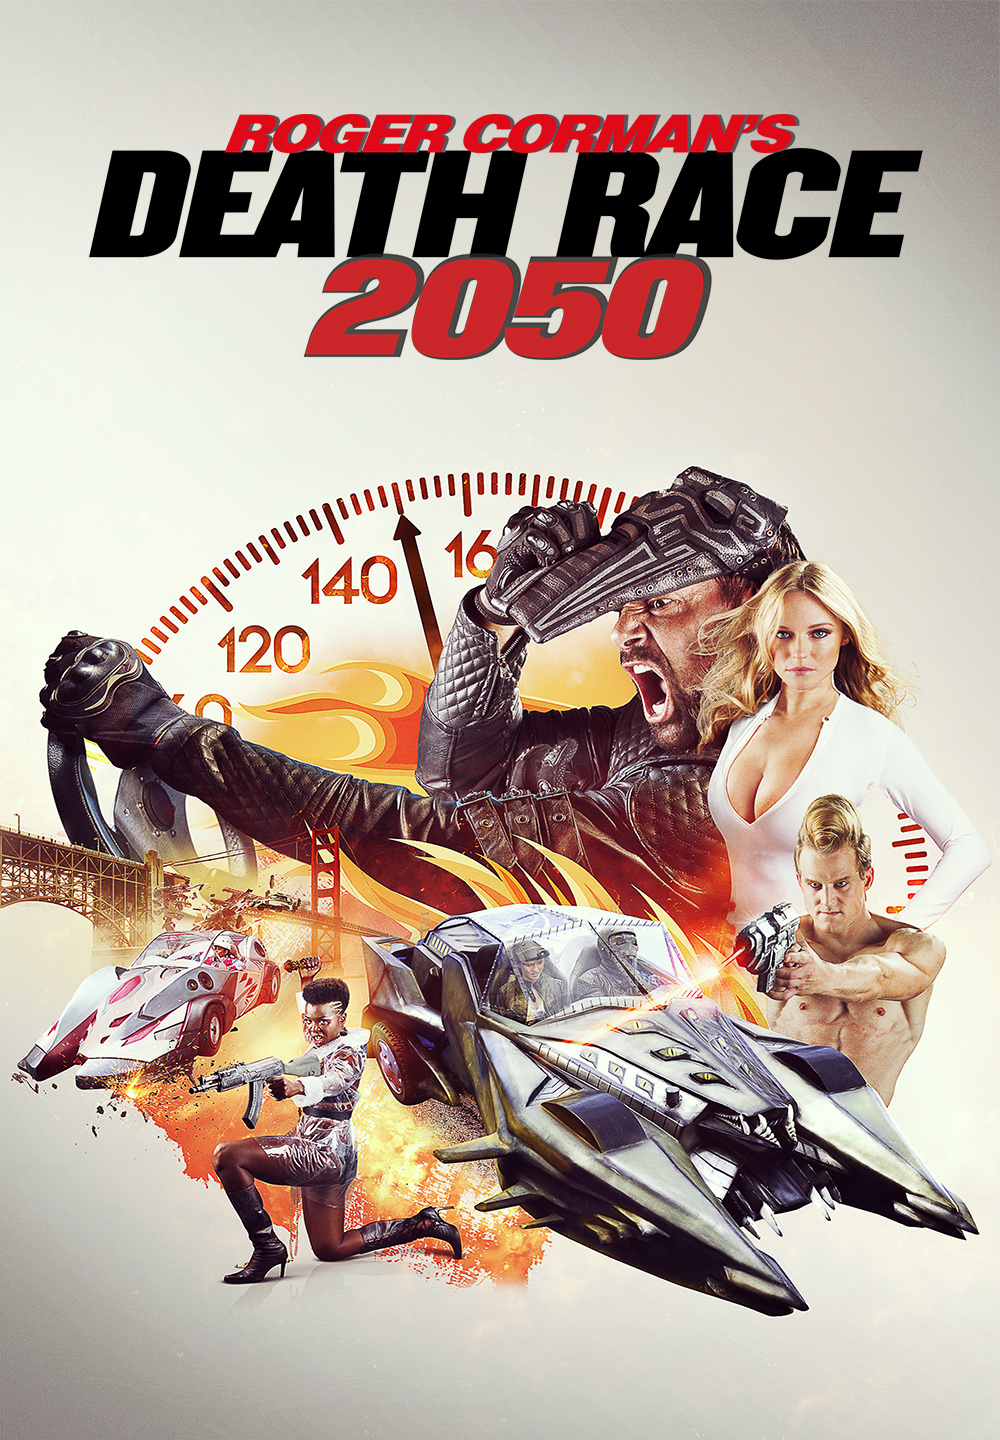 Death Race 2050 [HD] (2016)